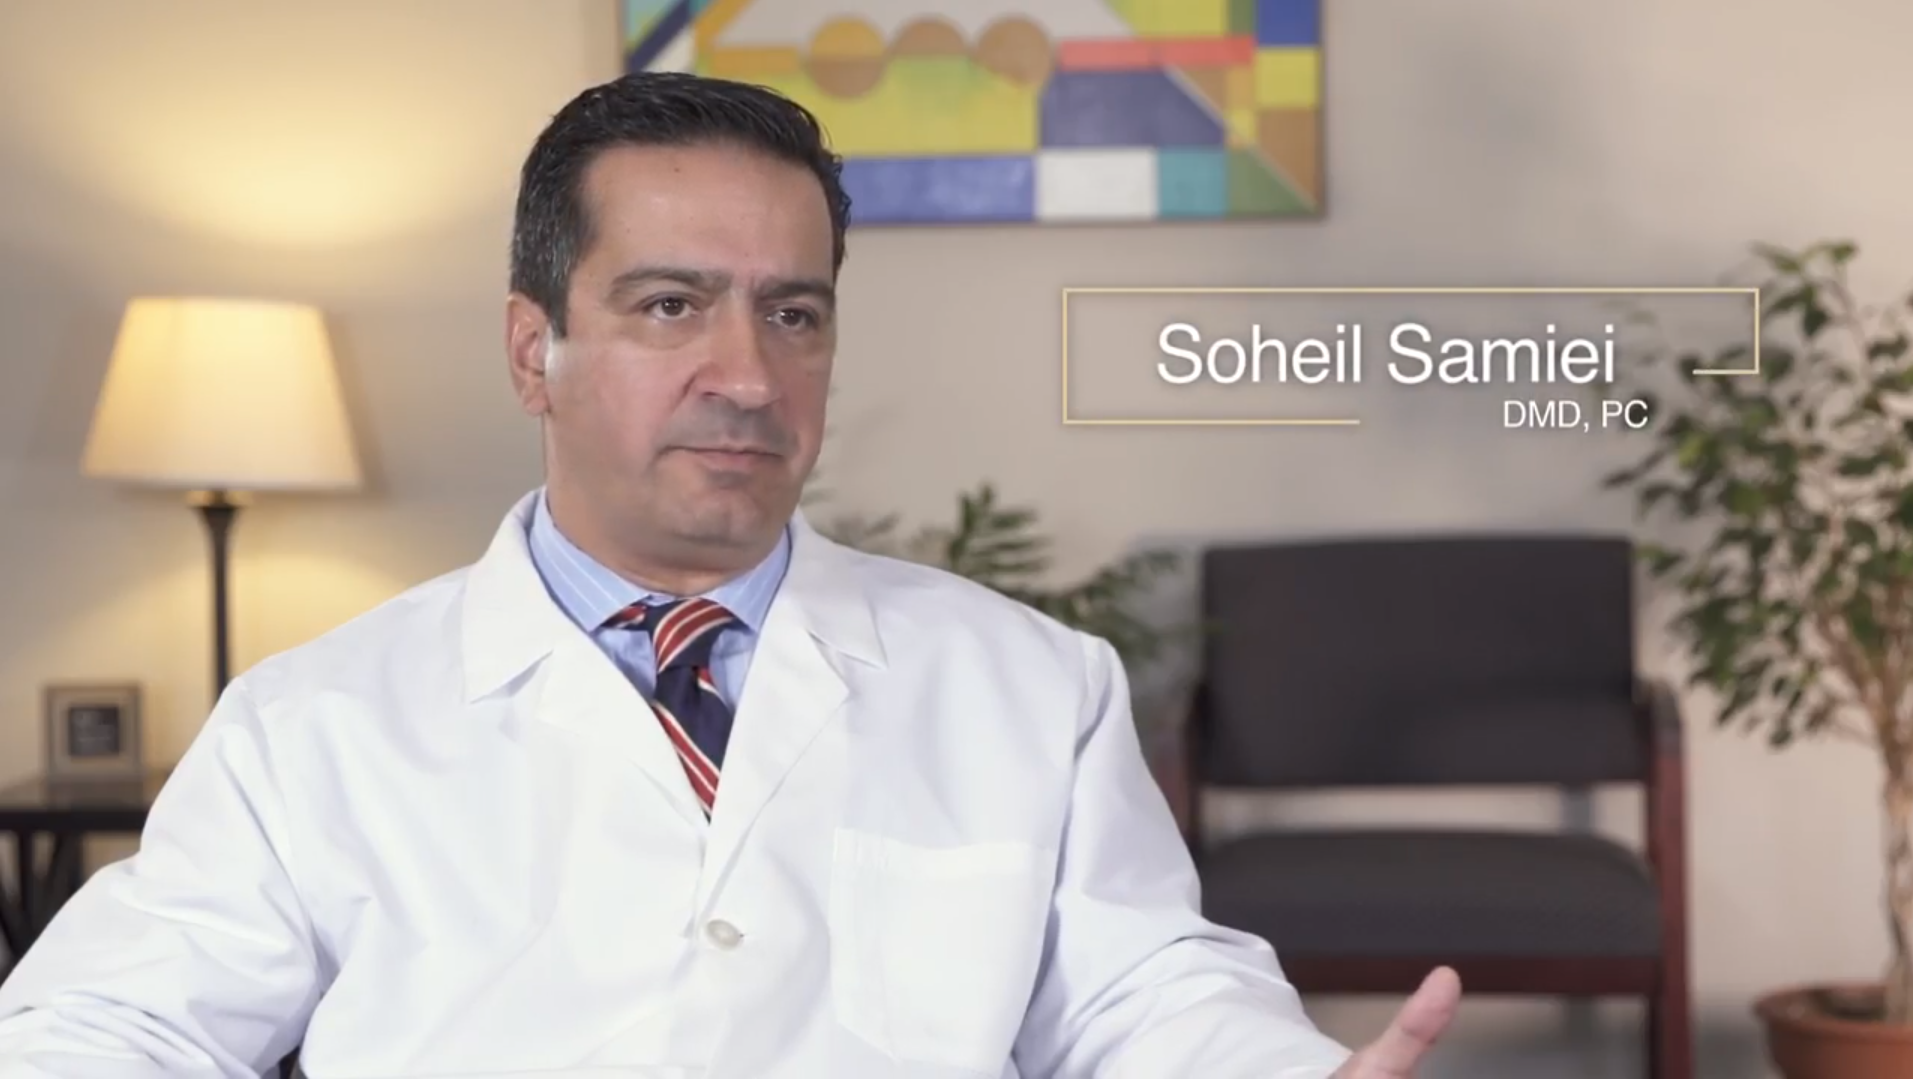 Dr. Samiei talks about CEREC